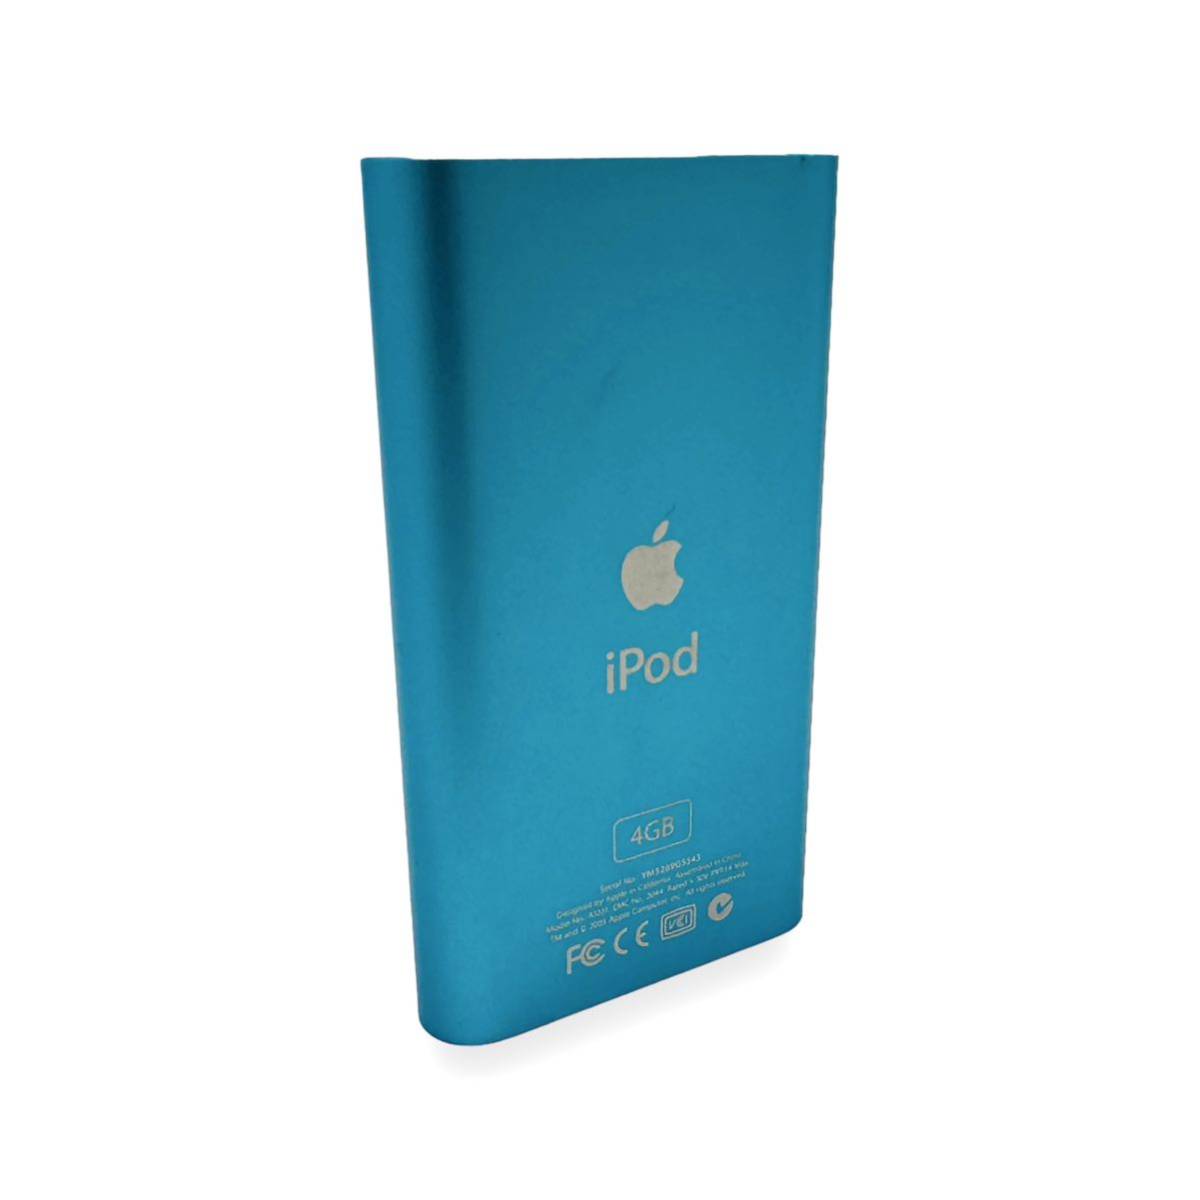  прекрасный товар работа хороший второй поколение Apple Apple ipod mini голубой 4GB M9802J/A